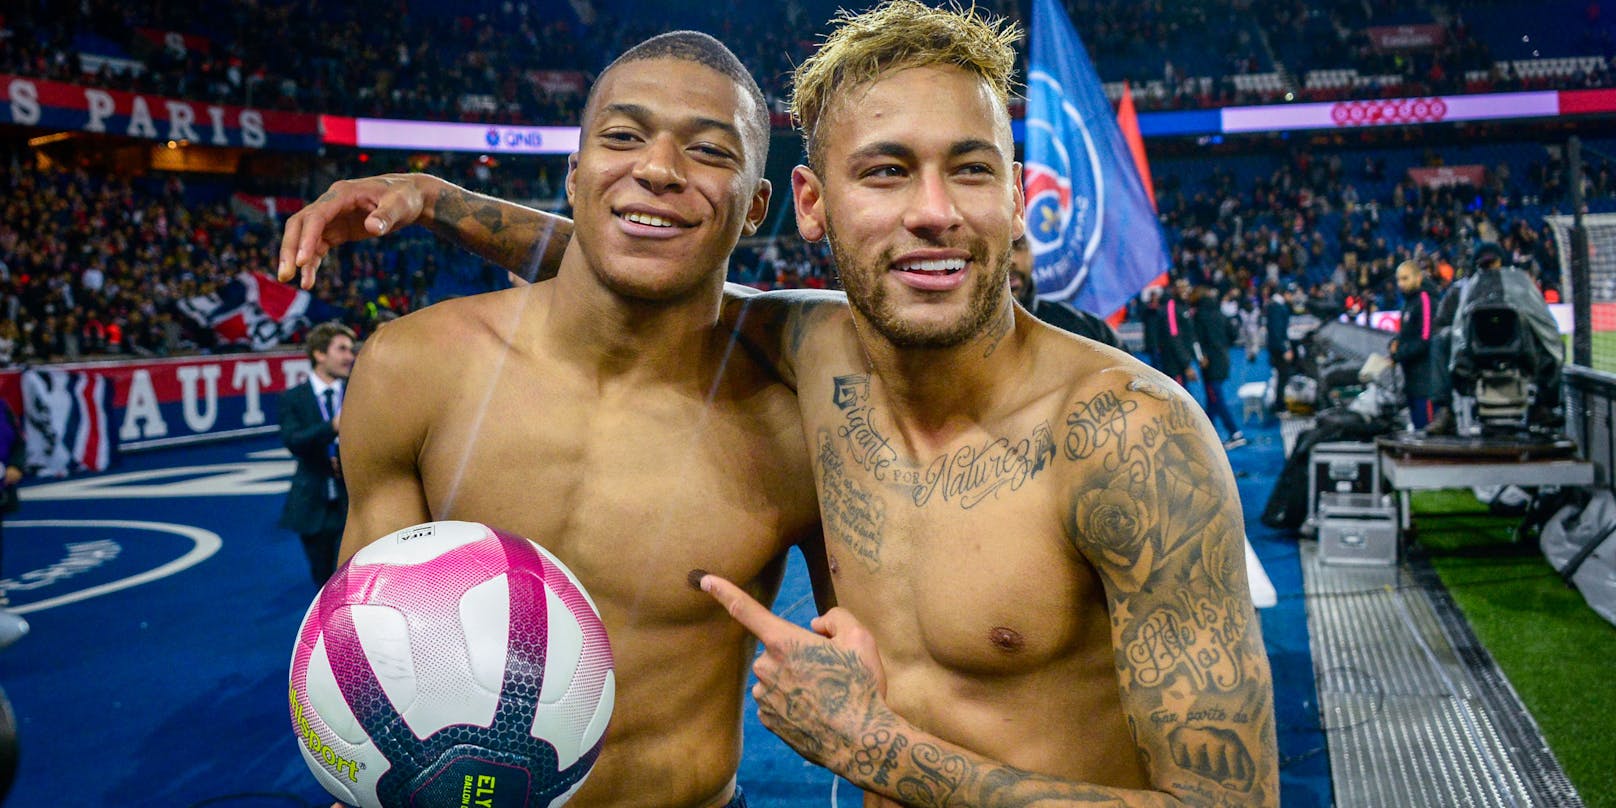 Die beiden Paris-Stars M'bappe (l.) und Neymar